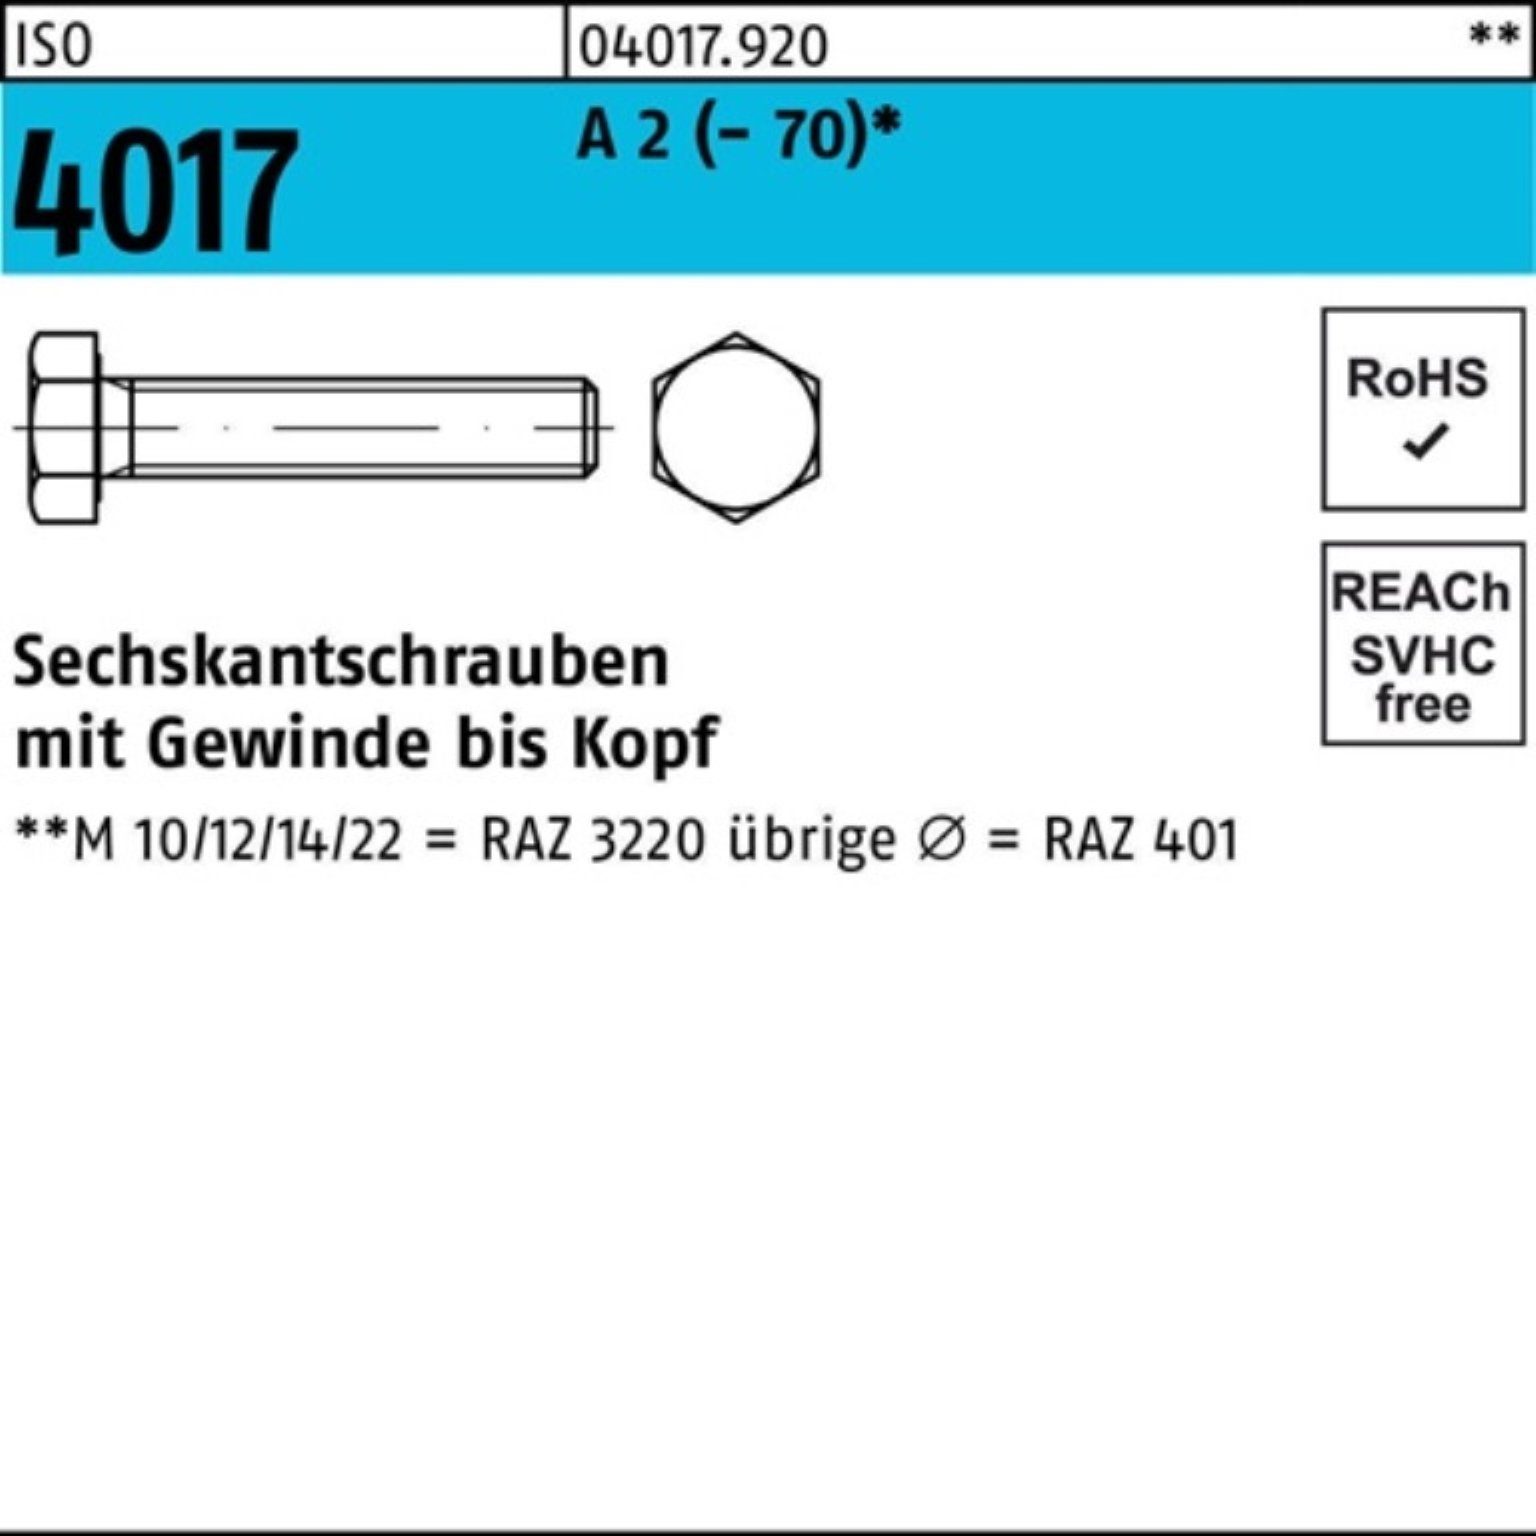 Bufab Sechskantschraube 100er Pack Sechskantschraube ISO 4017 VG M16x 100 A 2 (70) 25 Stück